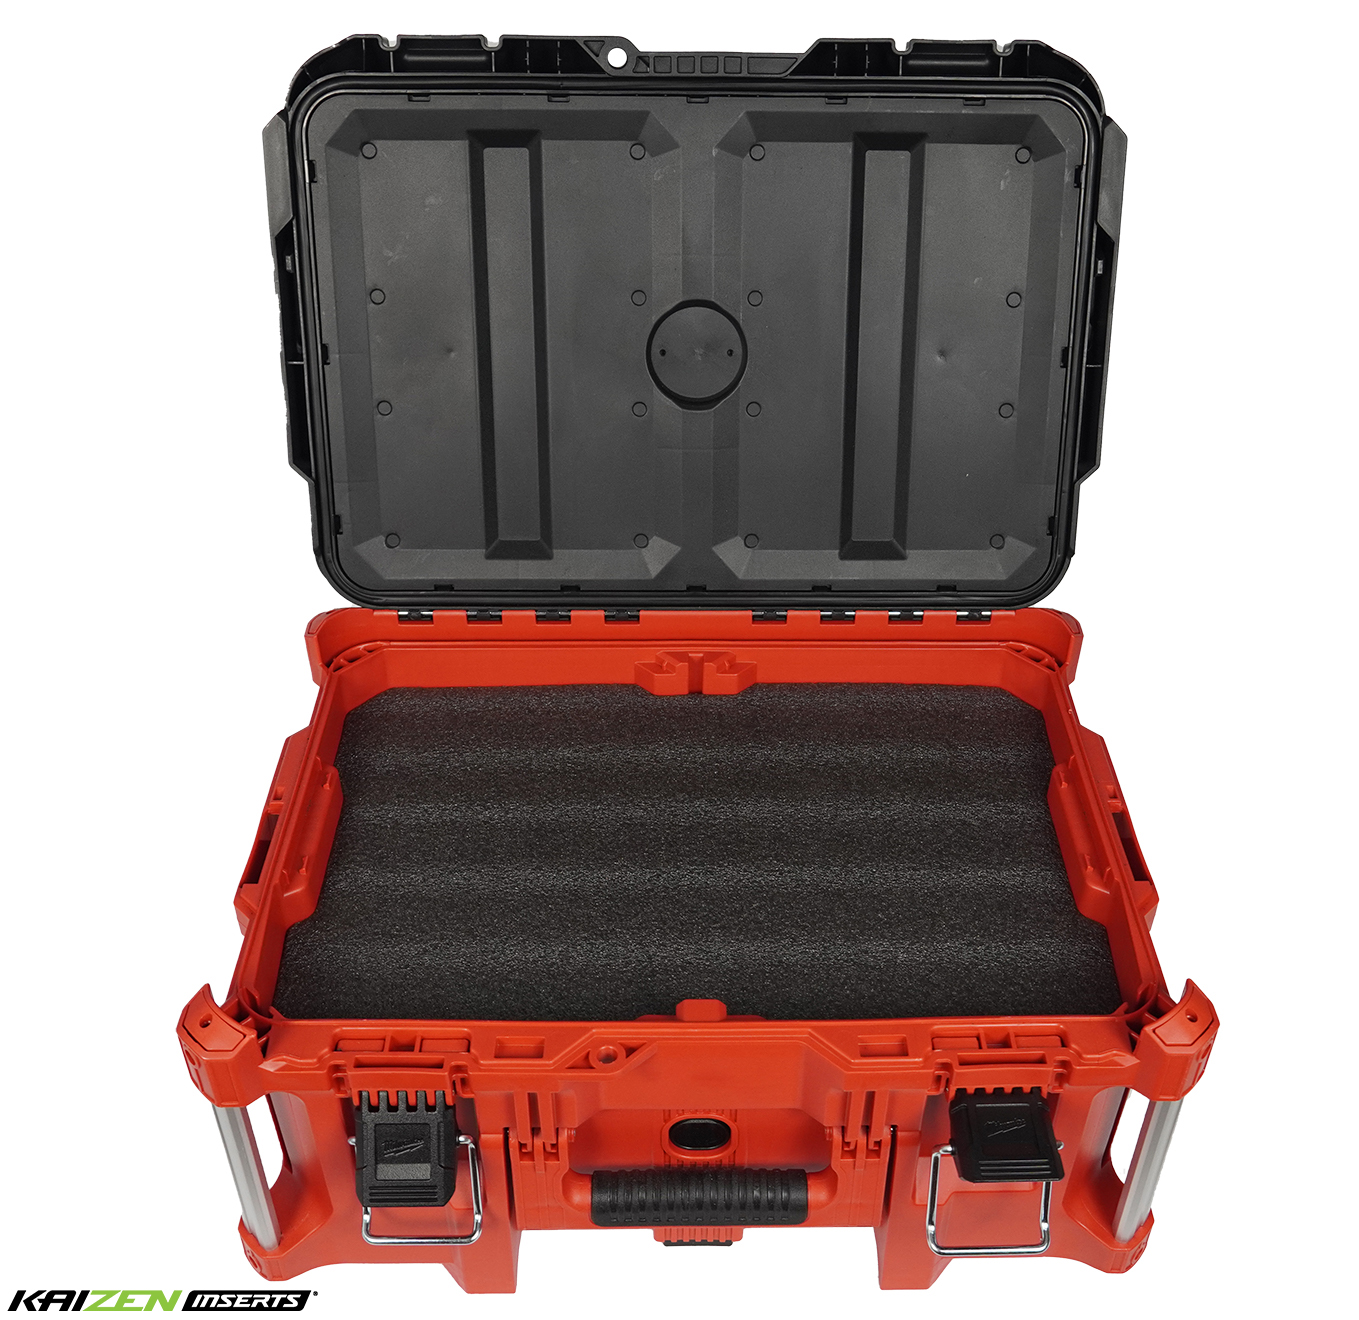 Milwaukee Packout Xl Tool Box 48-22-8429 - Kaizen Foam Inserts